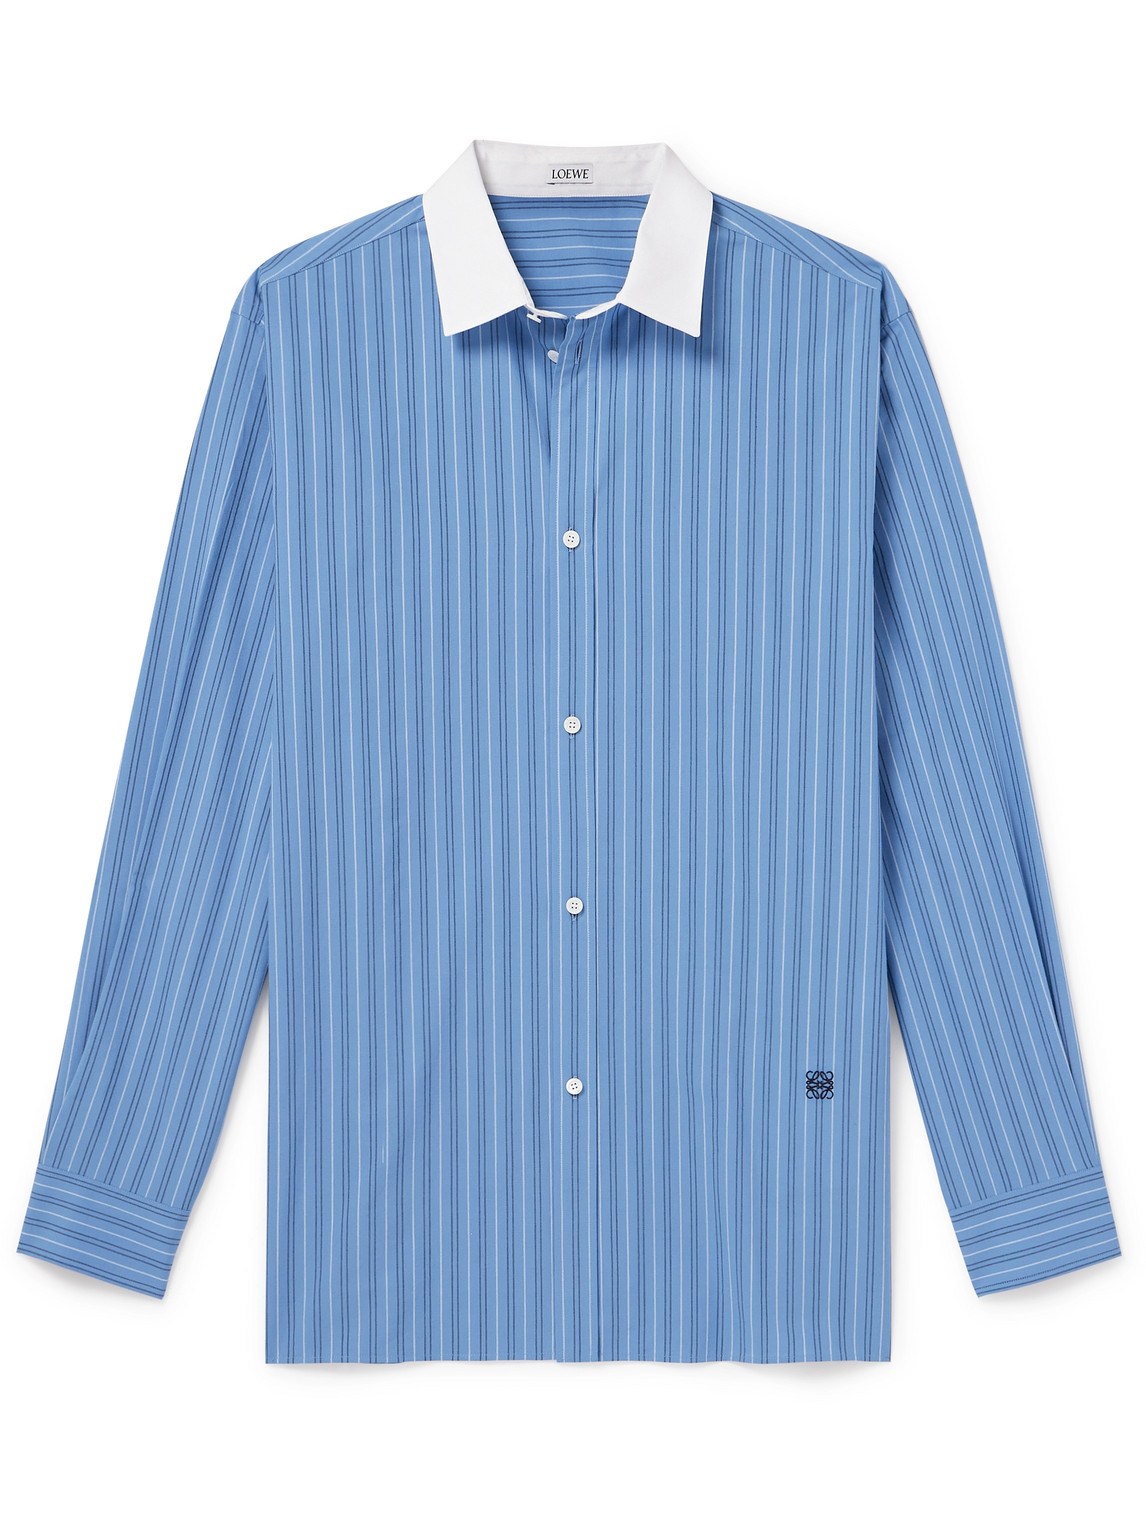 LOEWE - Logo-Embroidered Striped Cotton-Poplin Shirt - Men - Blue - EU 38 von LOEWE